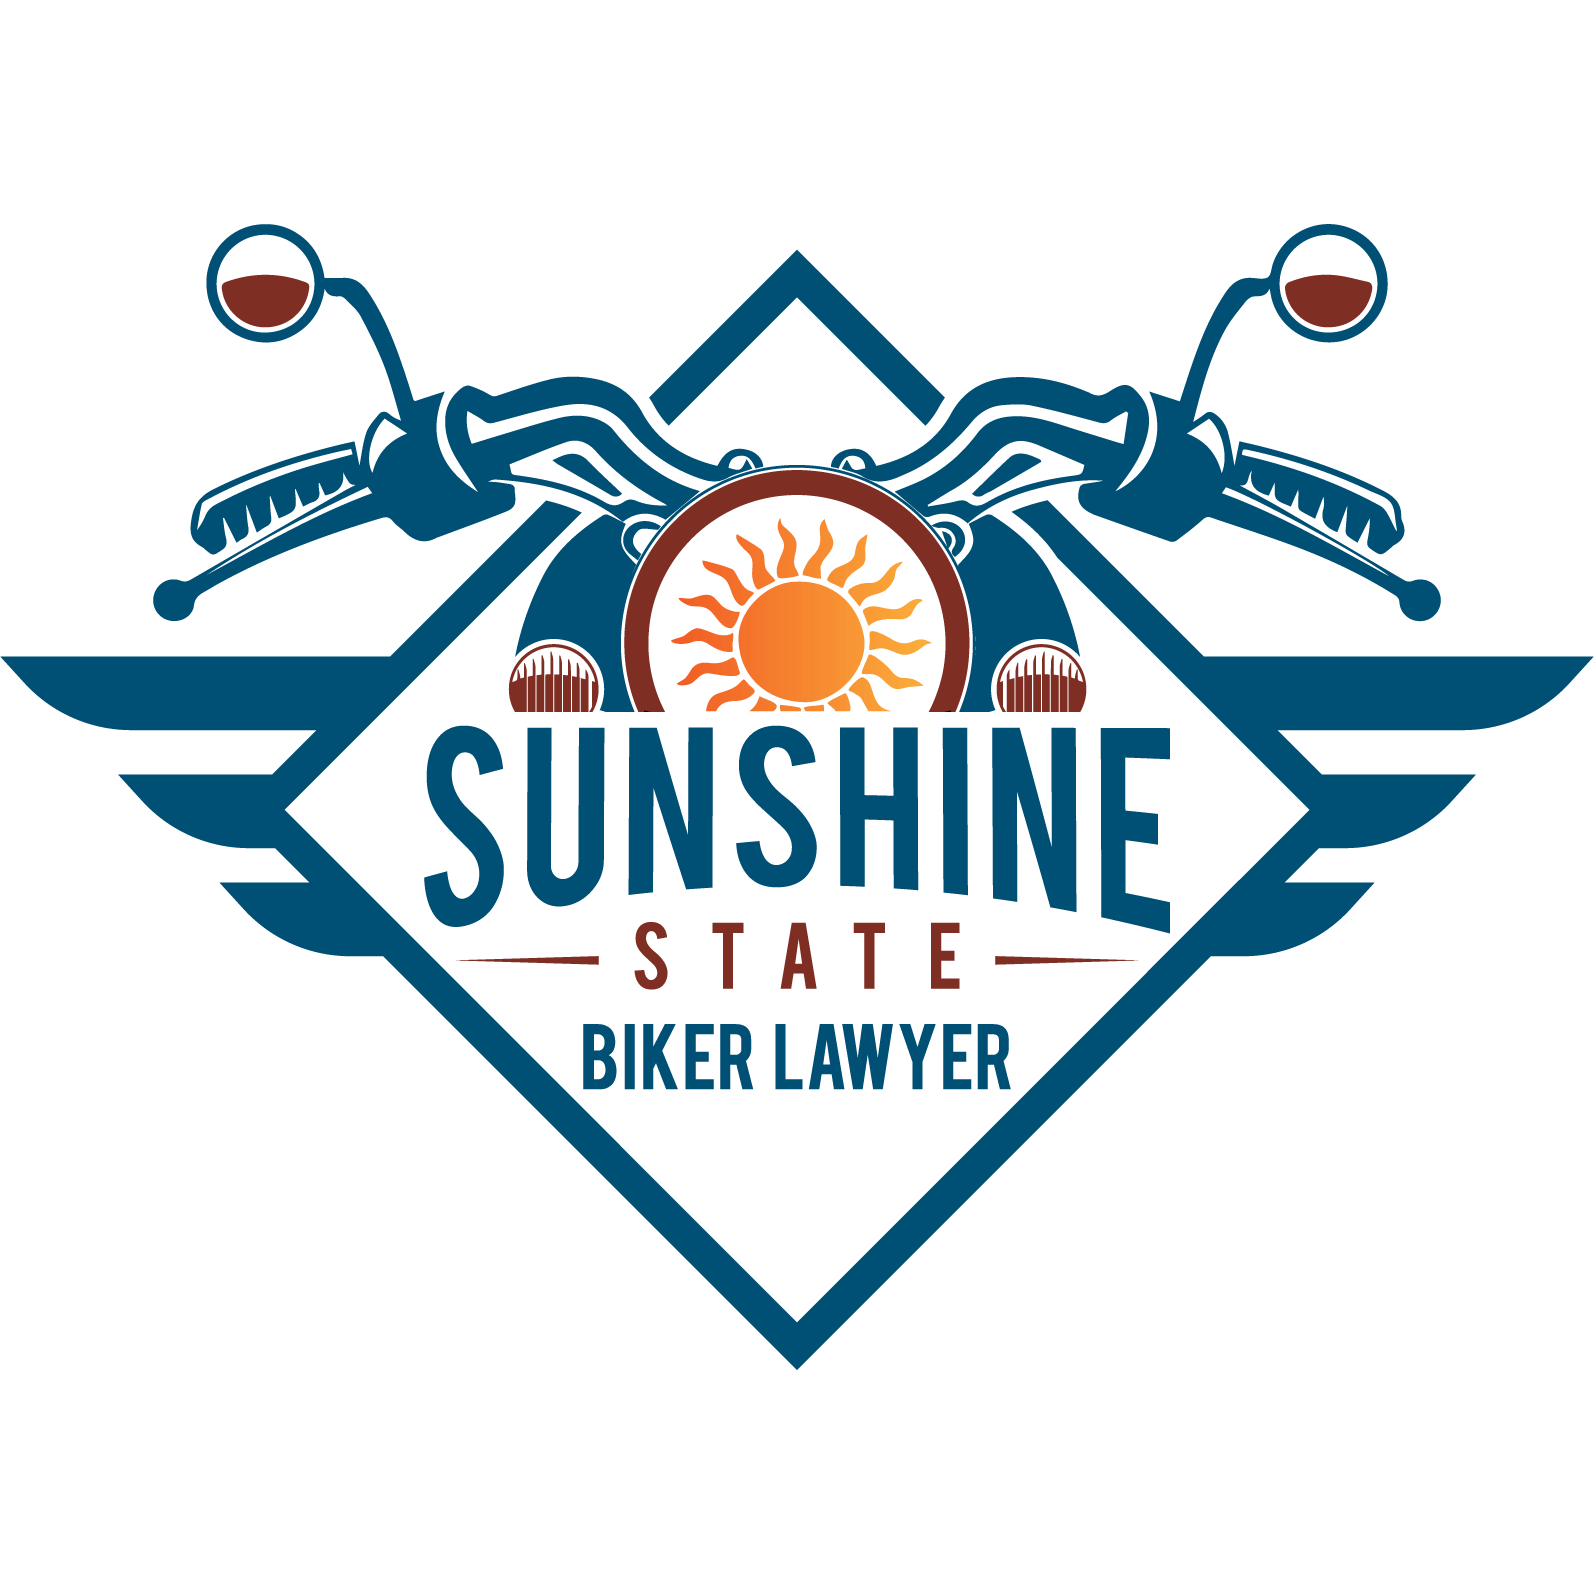 Sunshine State Biker Lawyer logo